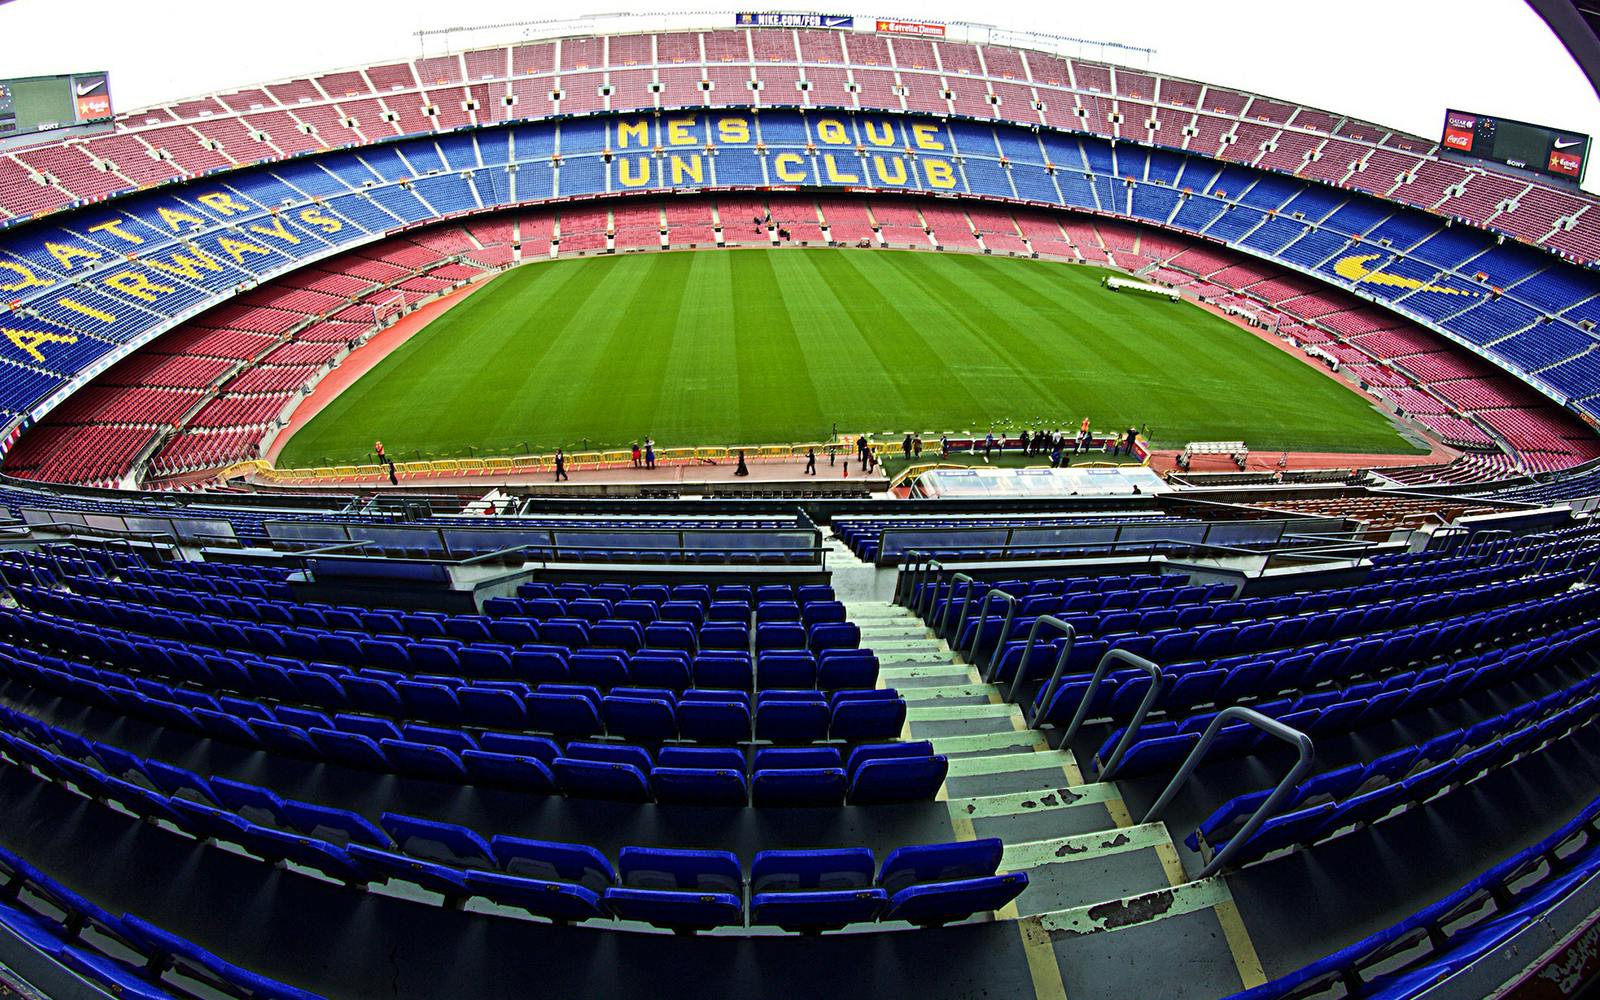 Кампа нова. Камп ноу стадион. Барселона Камп ноу. Стадион Камп ноу Барселона Испания. Стадион Camp nou.